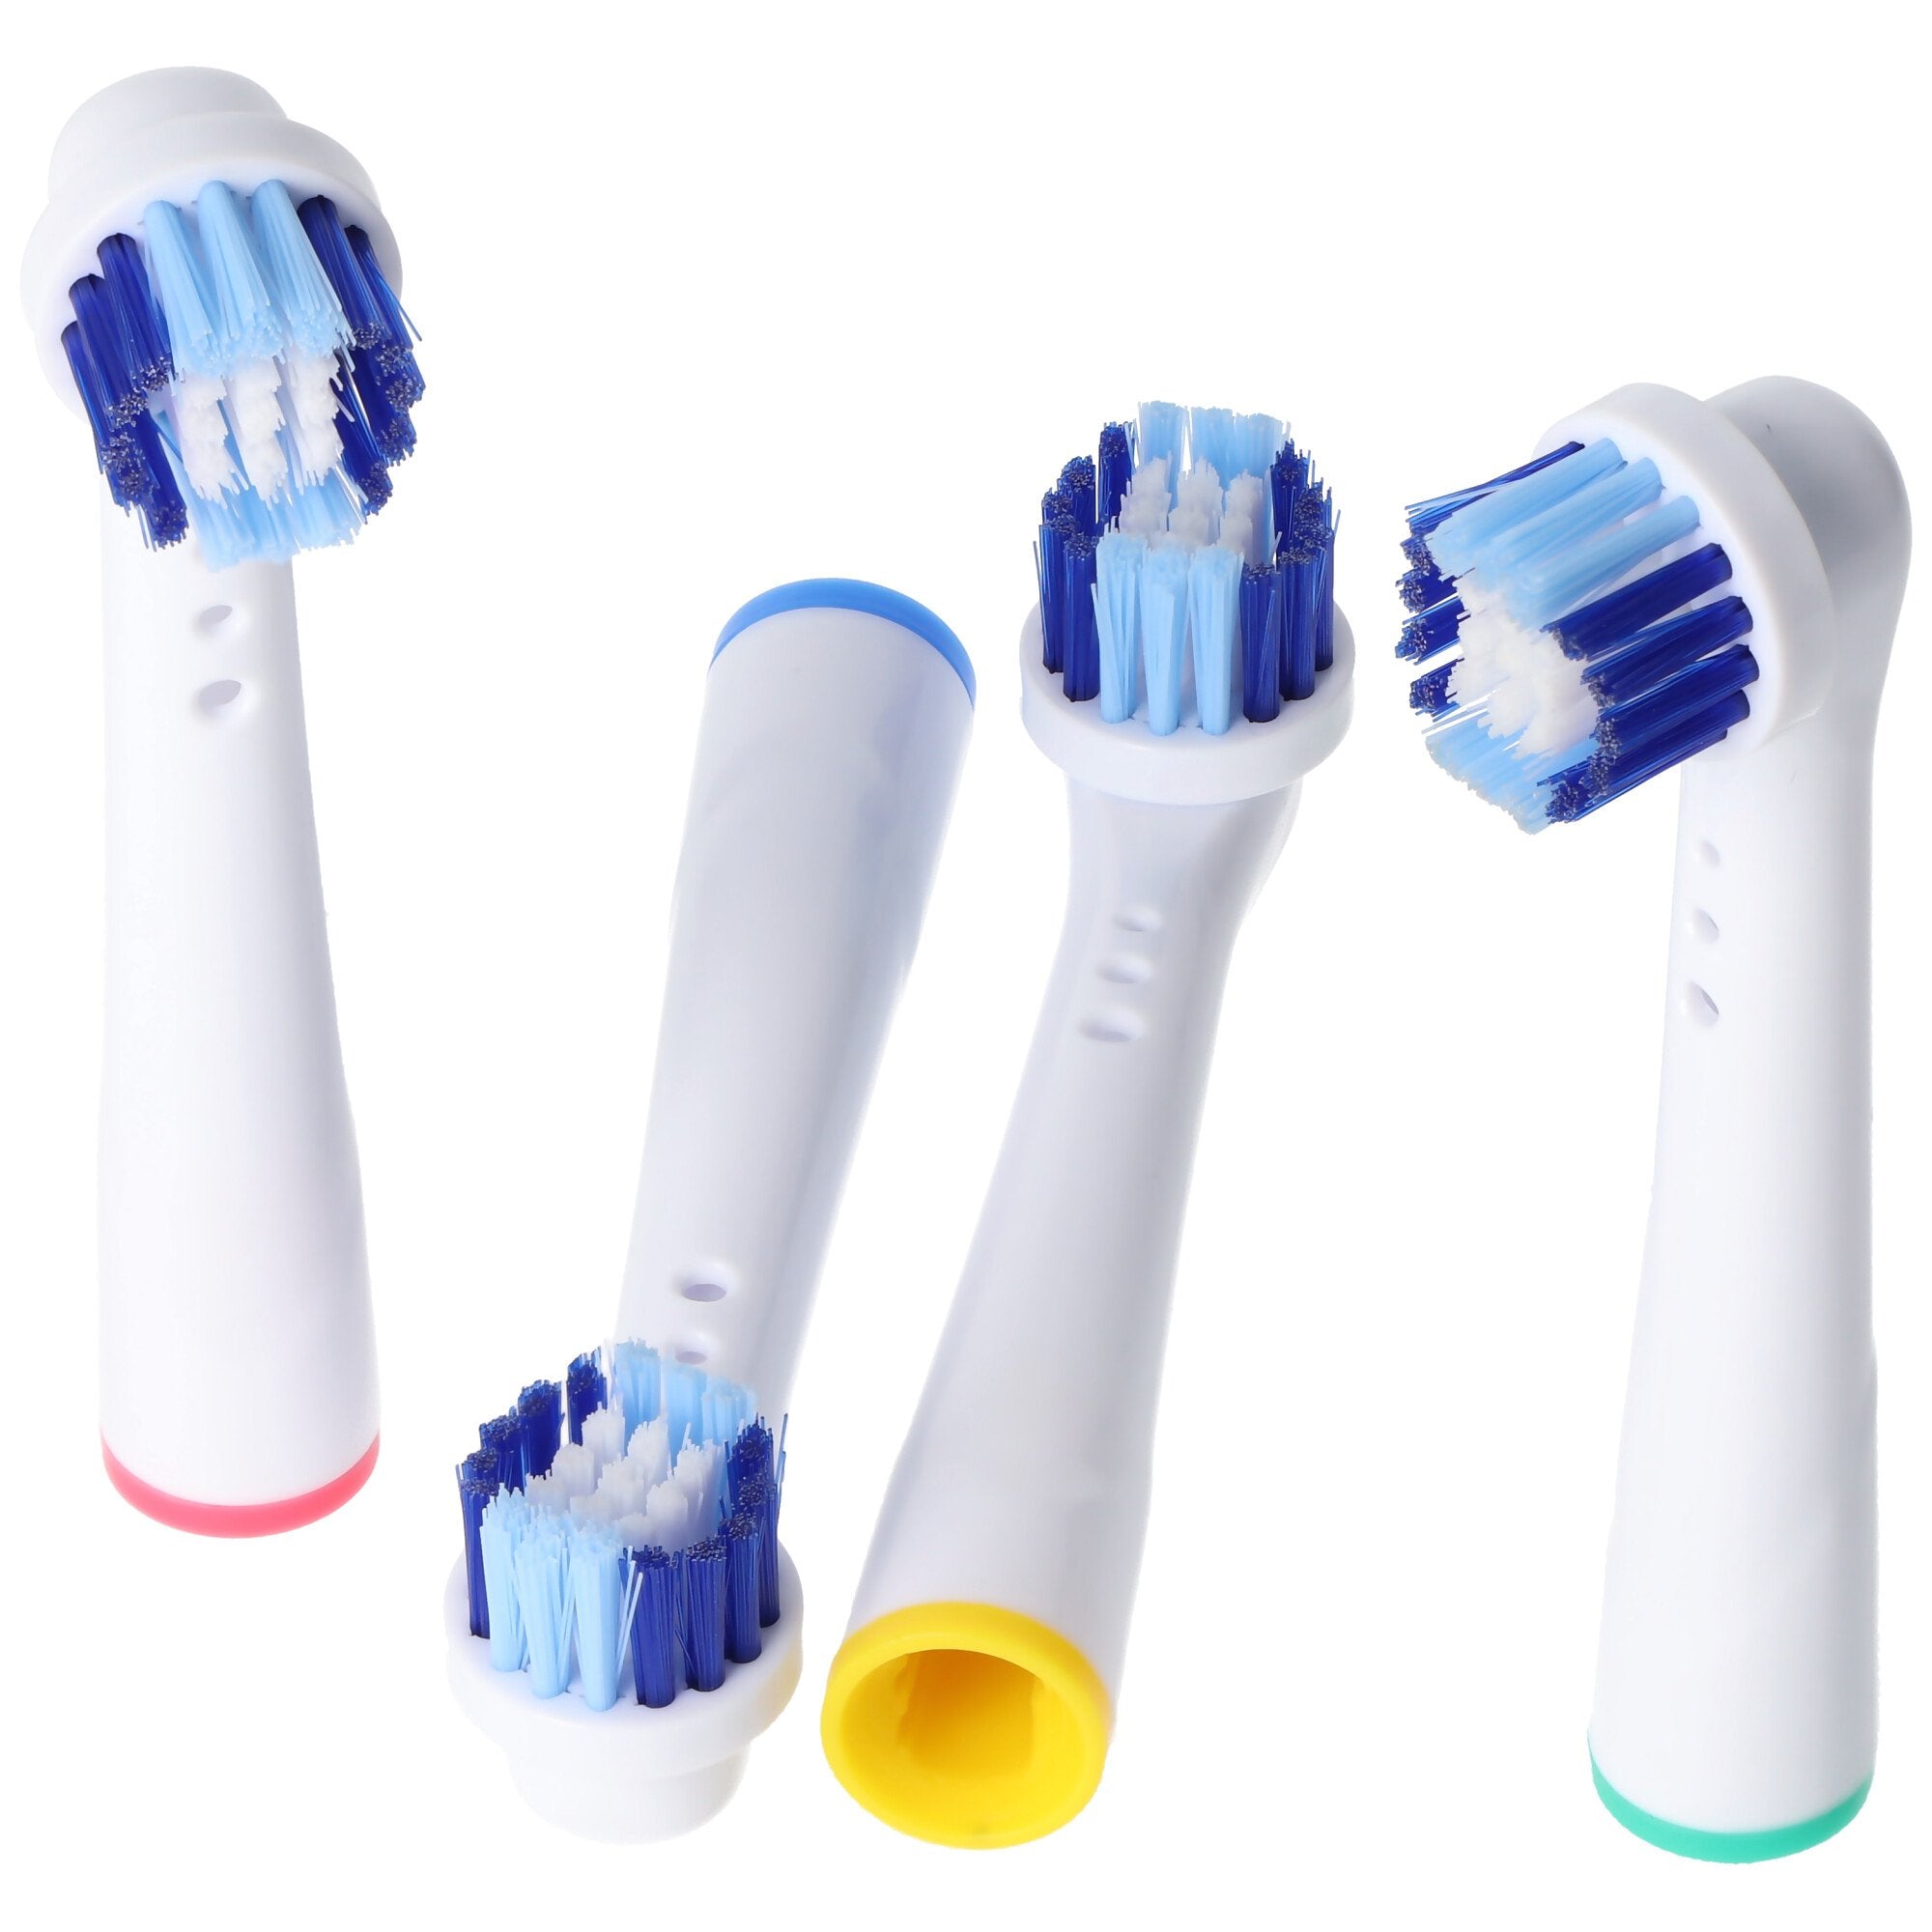 4 stuks reinigingsborstel V2 vervangende opzetborstels voor elektrische tandenborstels van Oral-B, g